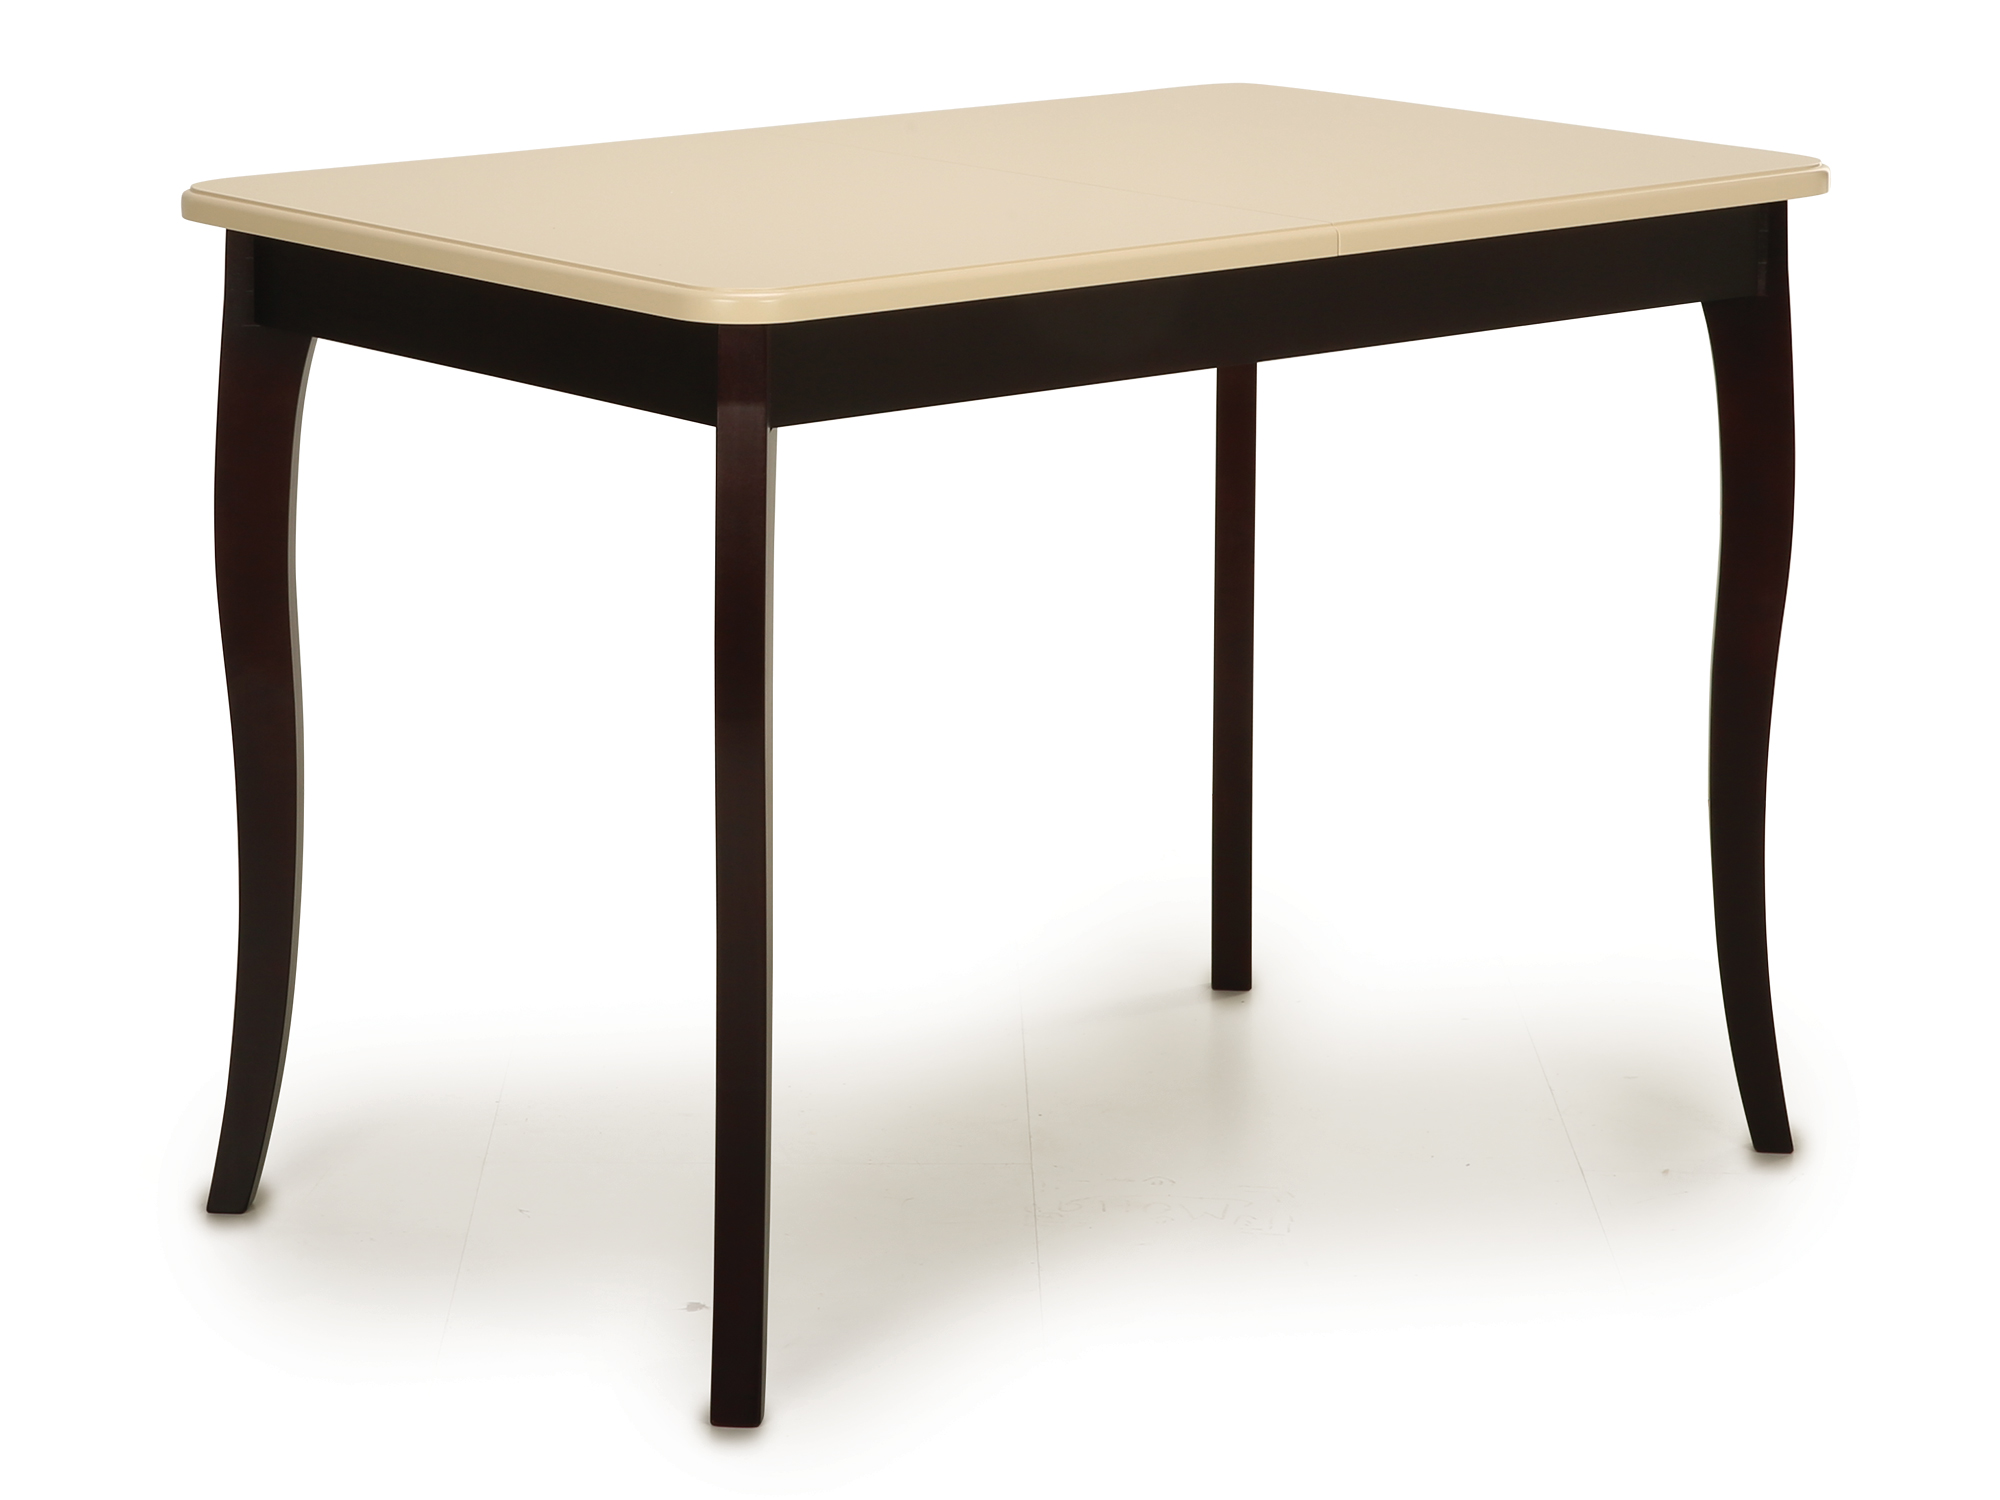 Стол Блюз , Коричневый темный, Массив обеденный стол ст 3045р коричневый темный массив